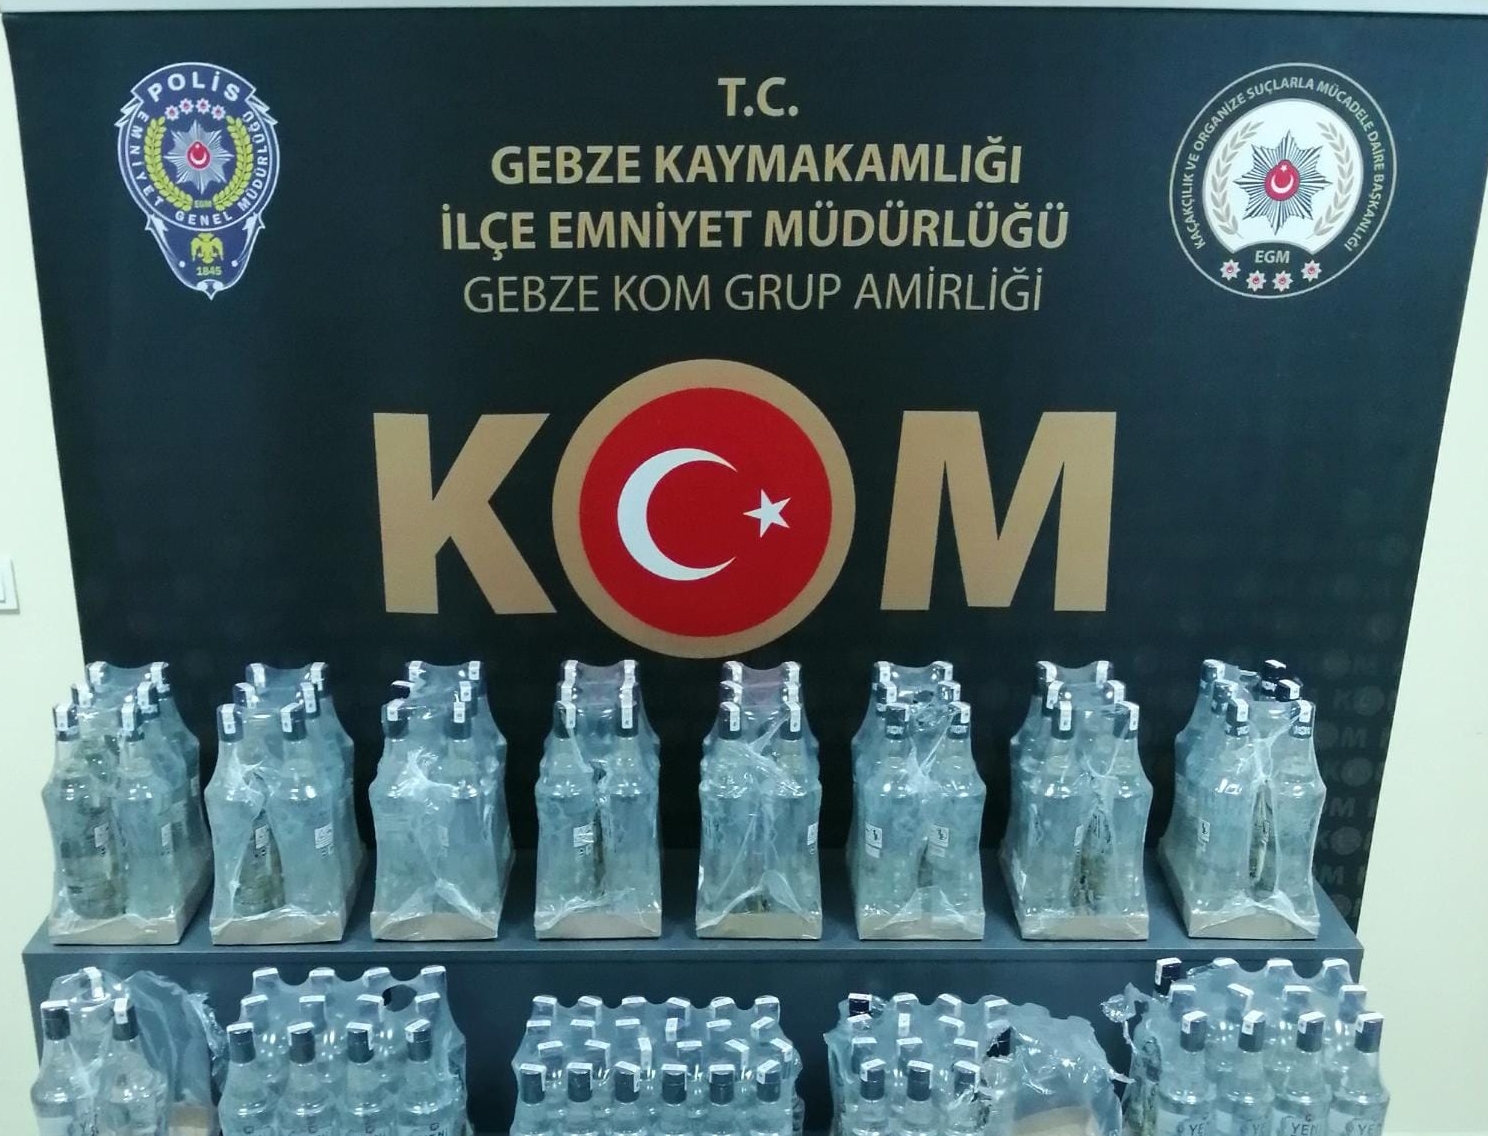 Kocaeli’de gerçekleştirilen operasyonda 171 şişe sahte içki ele geçirildi.